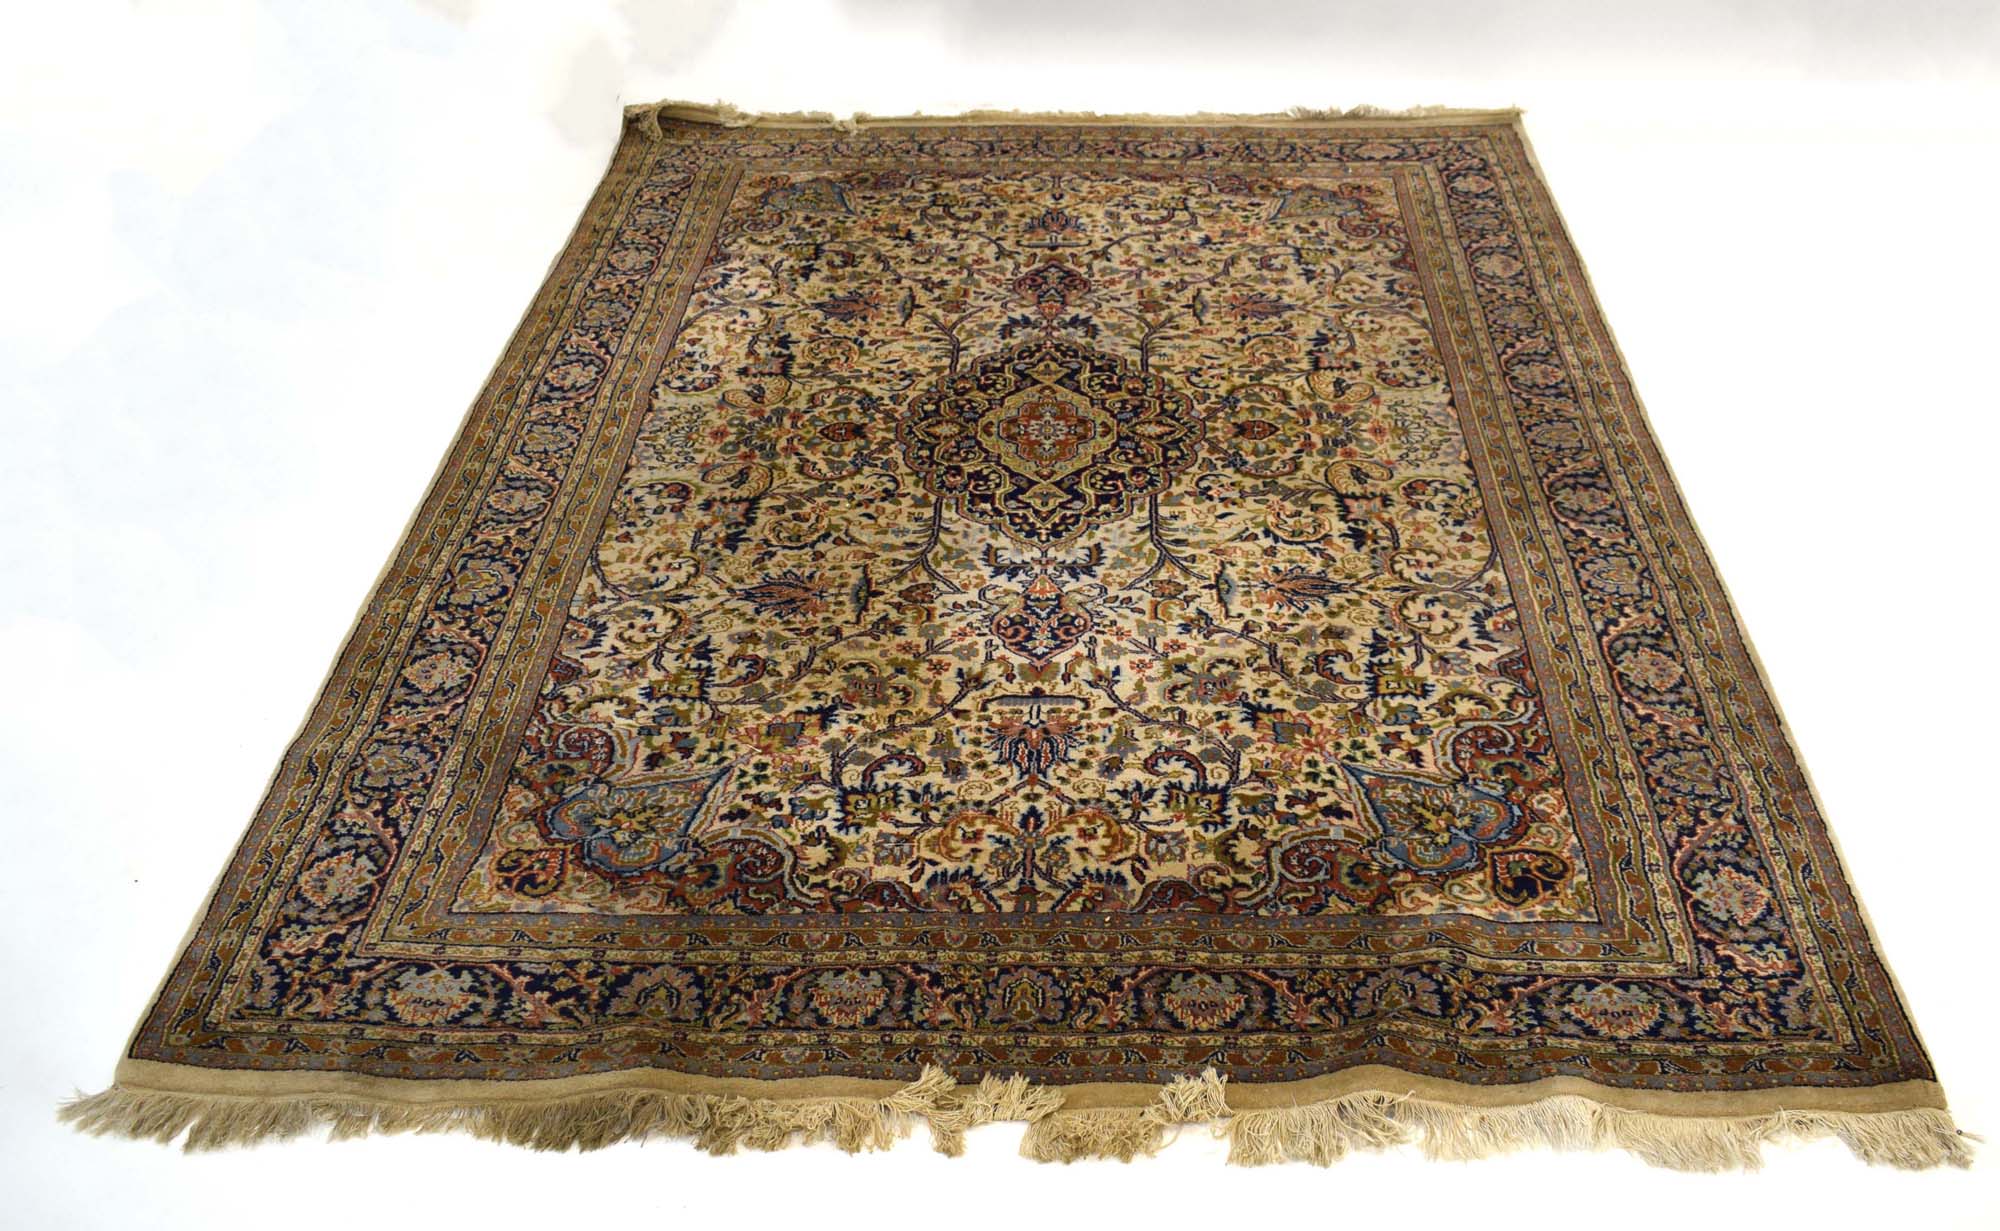 An Indian woolen carpet,